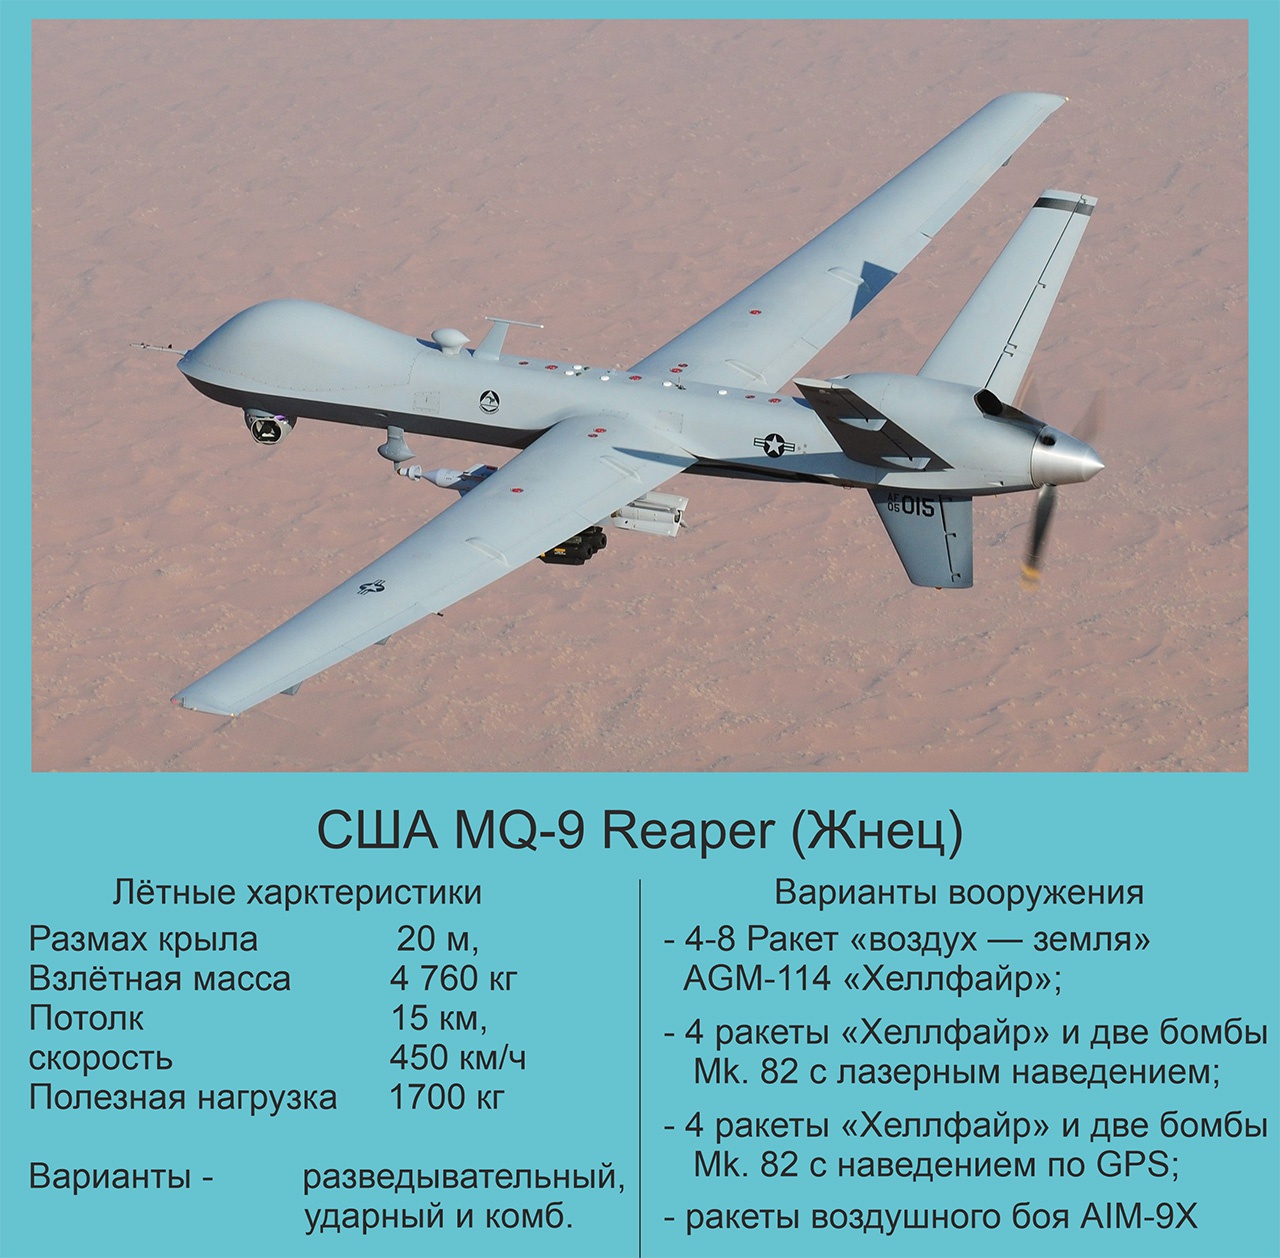 Тактико-технические характеристики БПЛА MQ-9 Reaper.